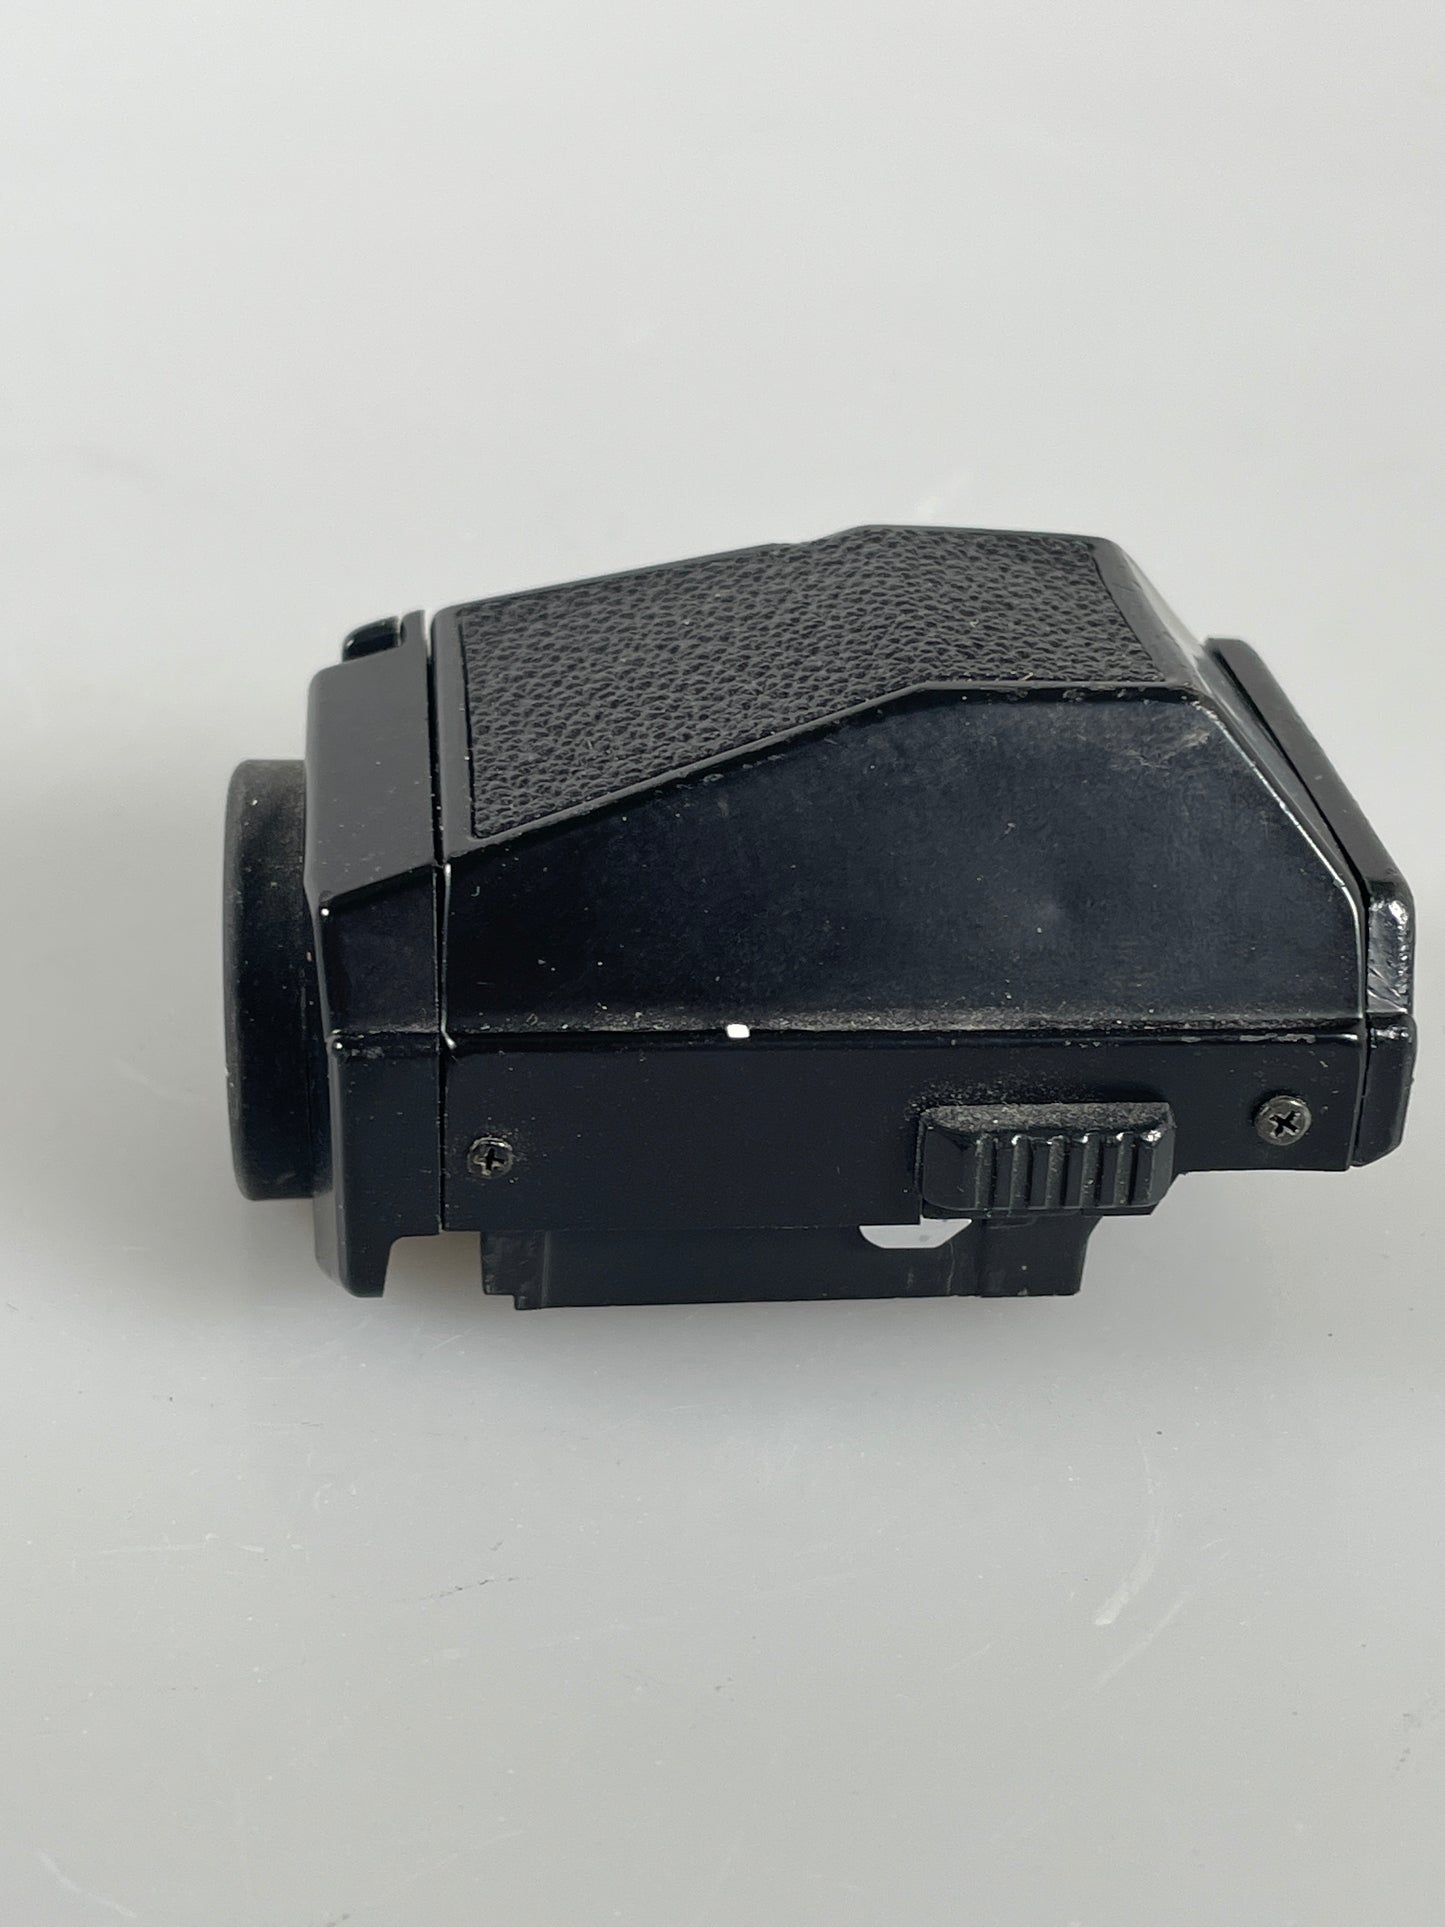 Nikon DE-2 Eye Level Prism View Finder for Nikon F3 Series Black